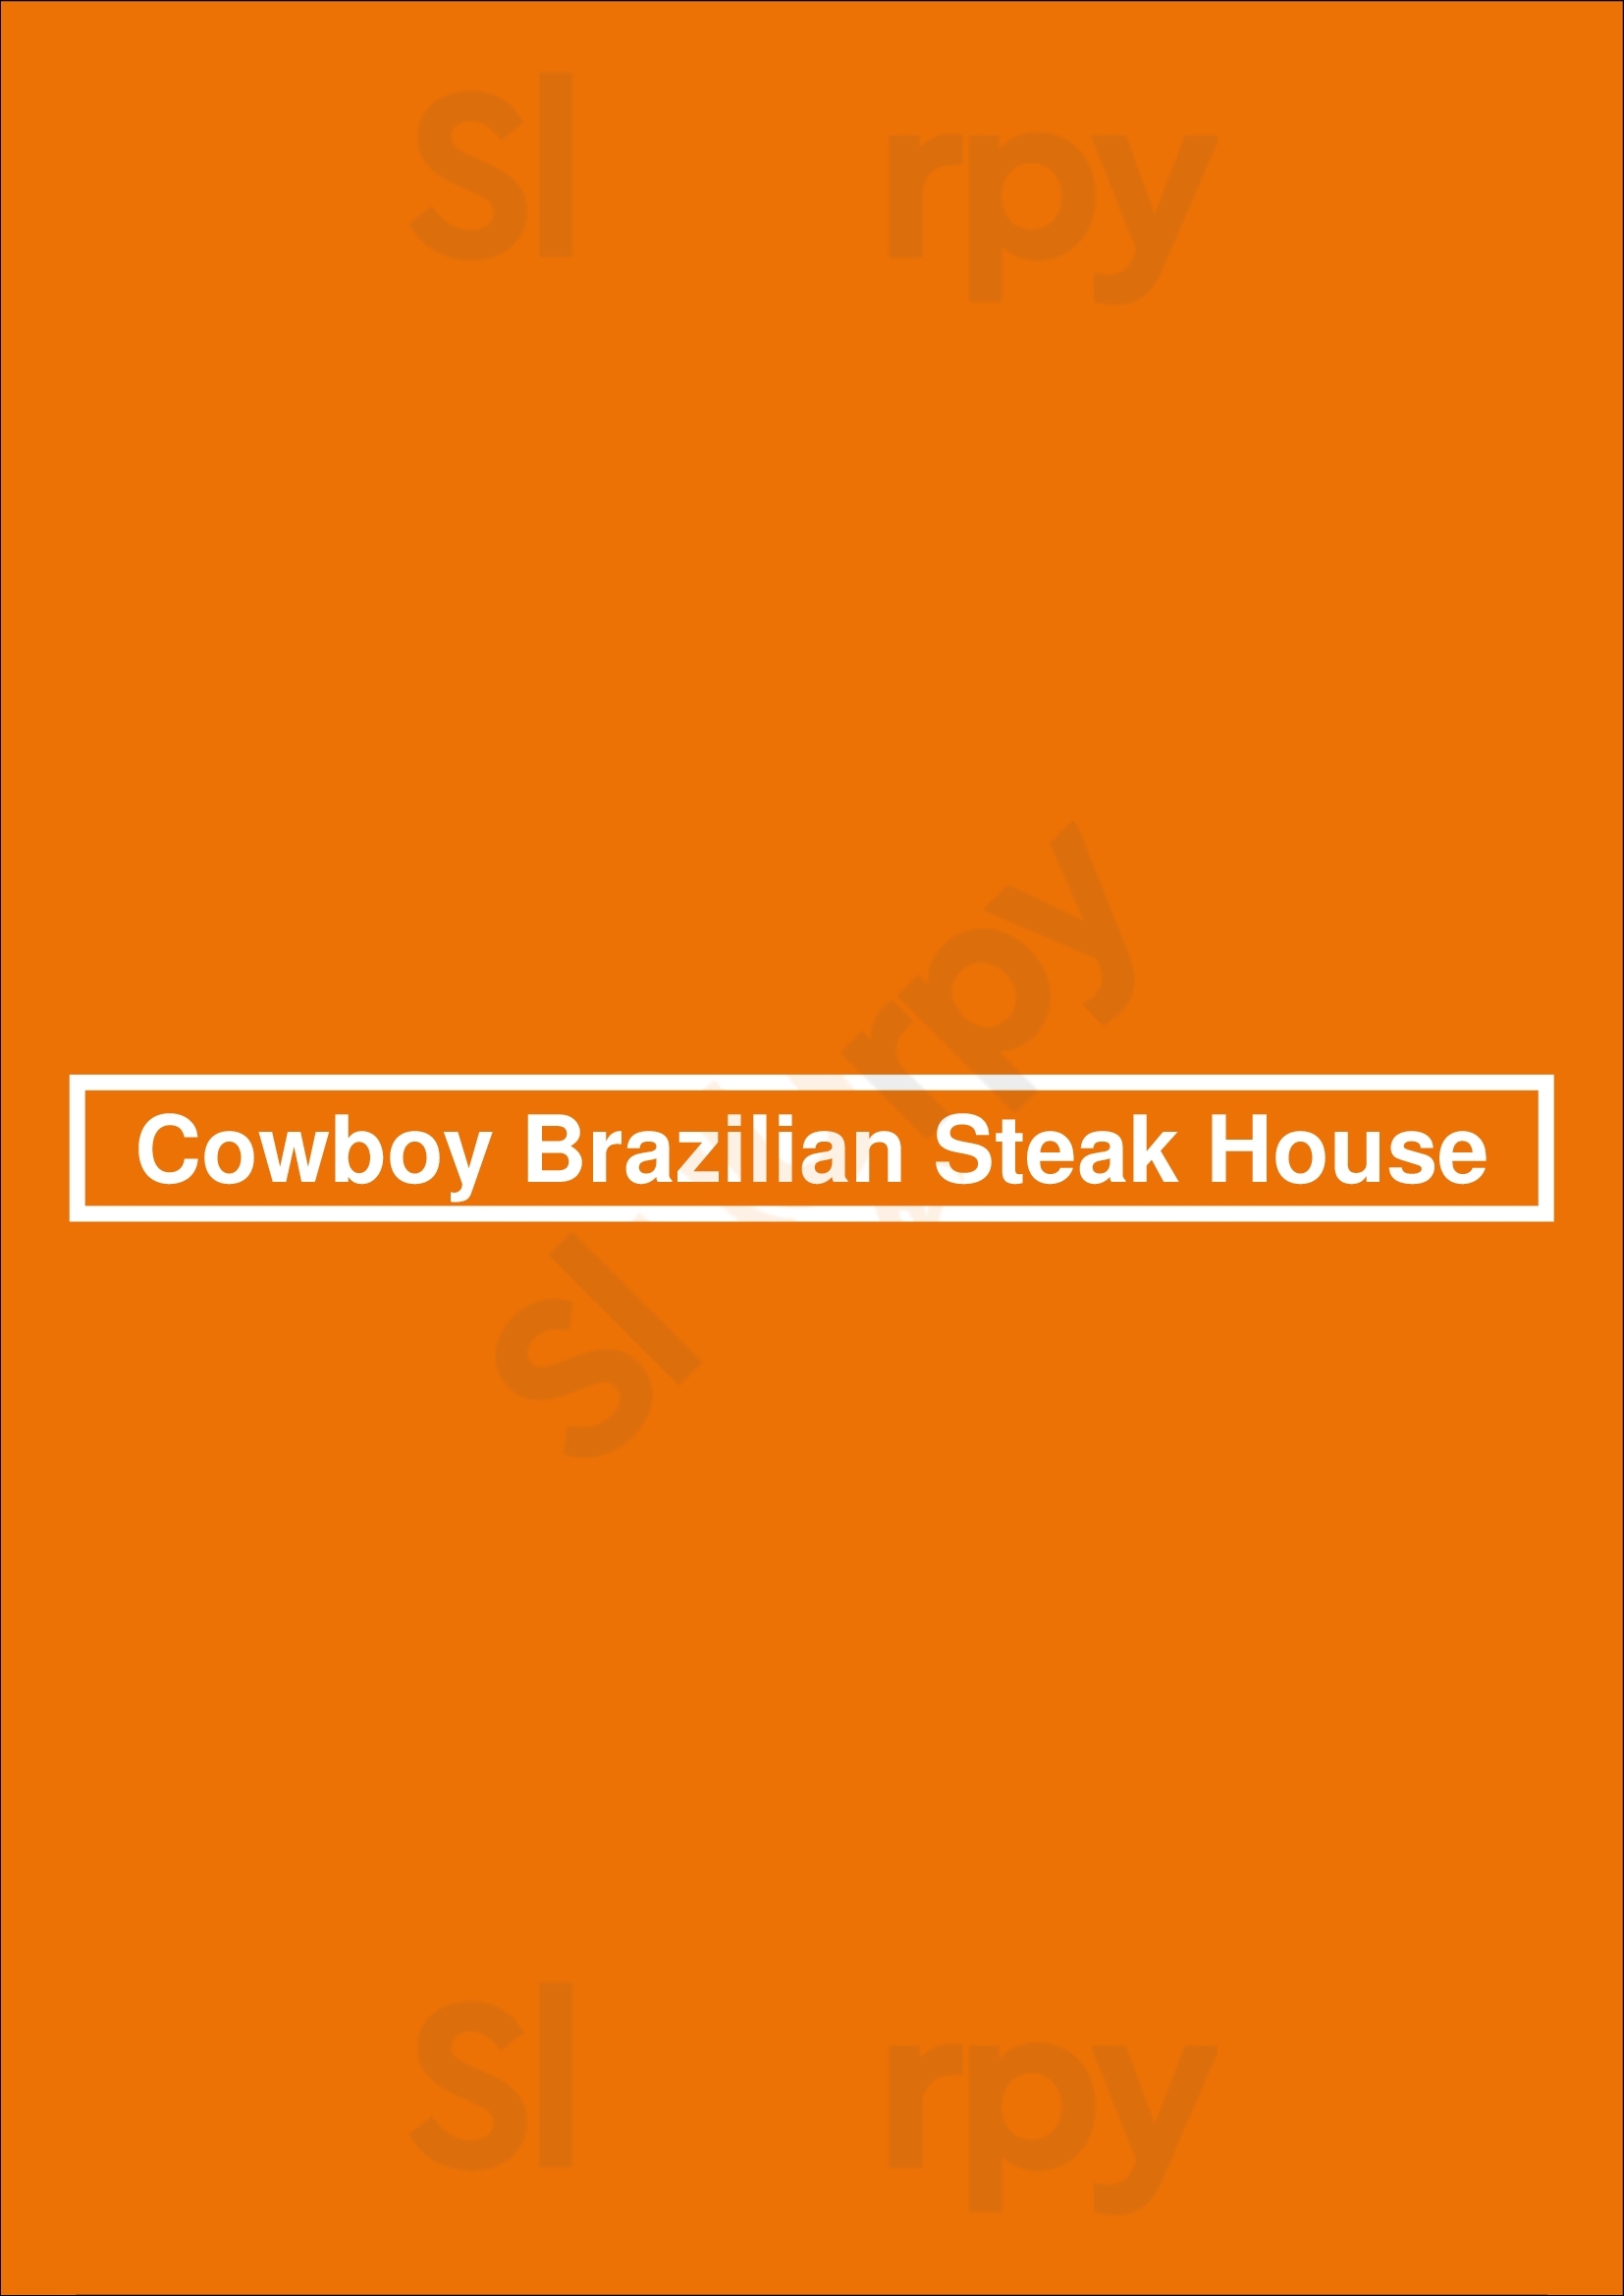 Cowboy Brazilian Steak House Hilton Head Menu - 1